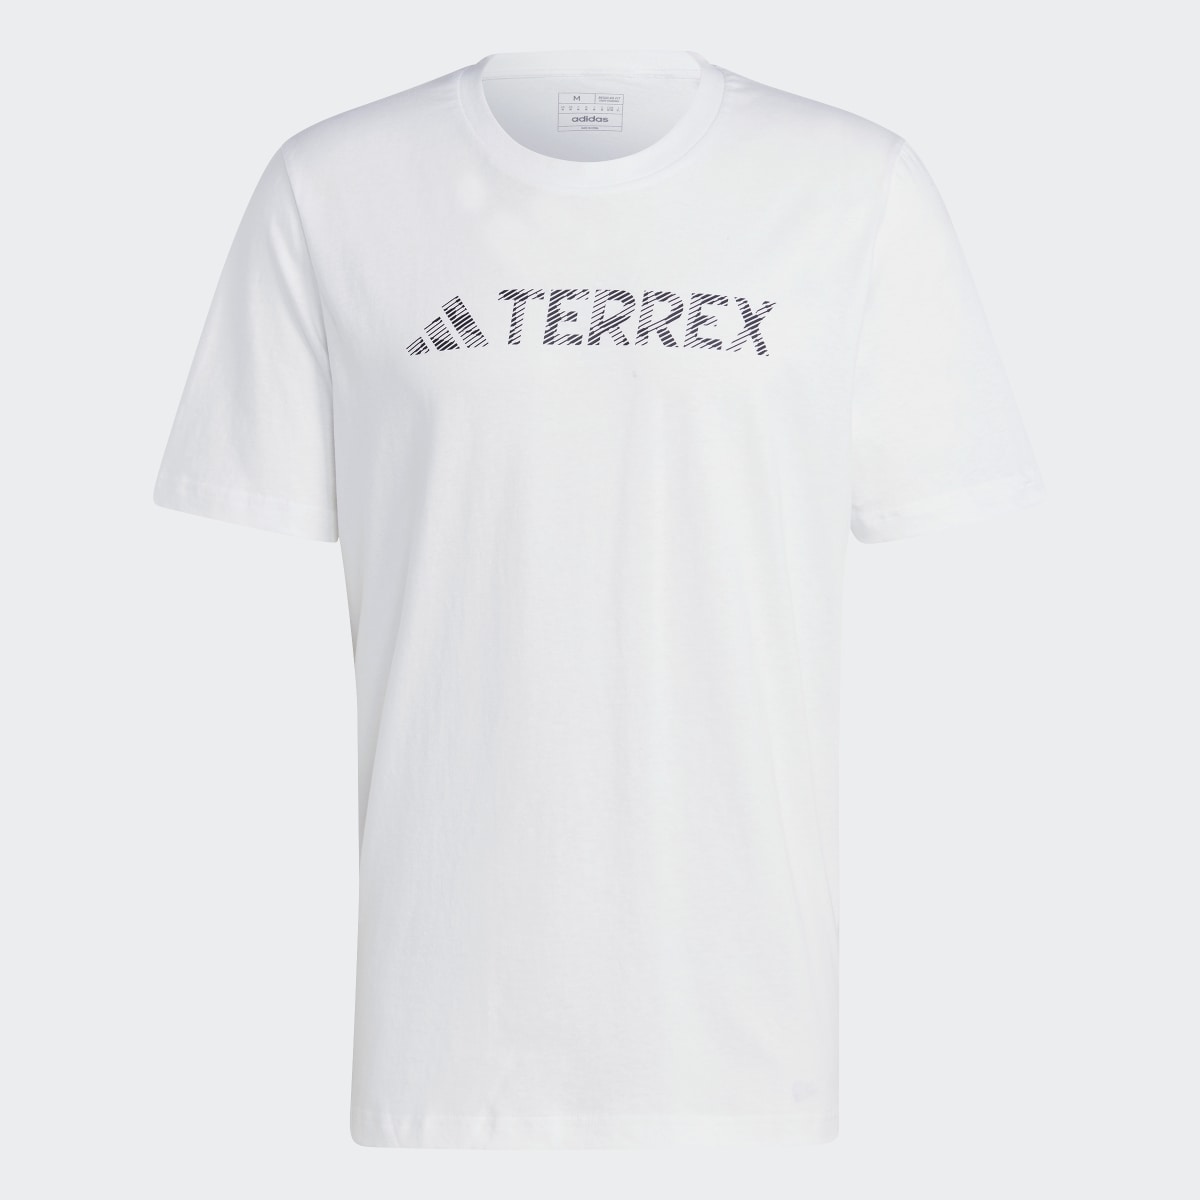 Adidas Terrex Classic Logo Tee. 5